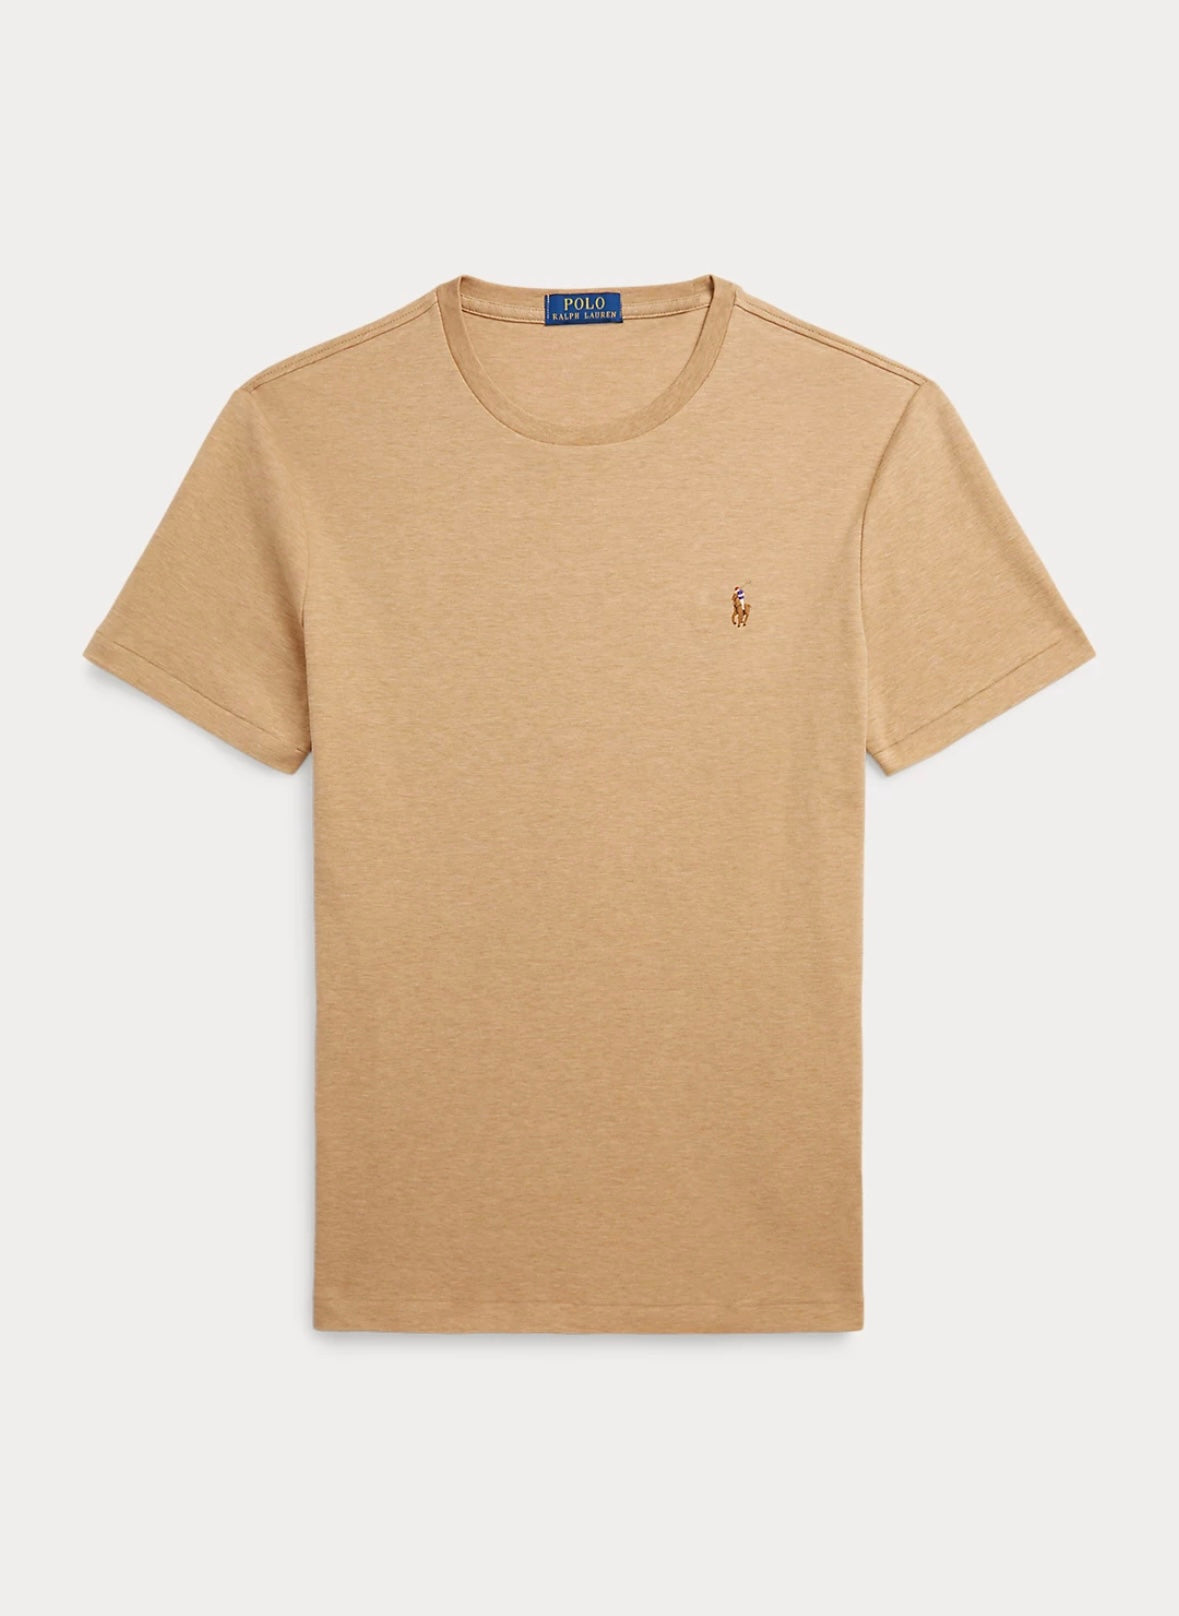 Polo Ralph Lauren Interlock t-shirt - Classic Camel